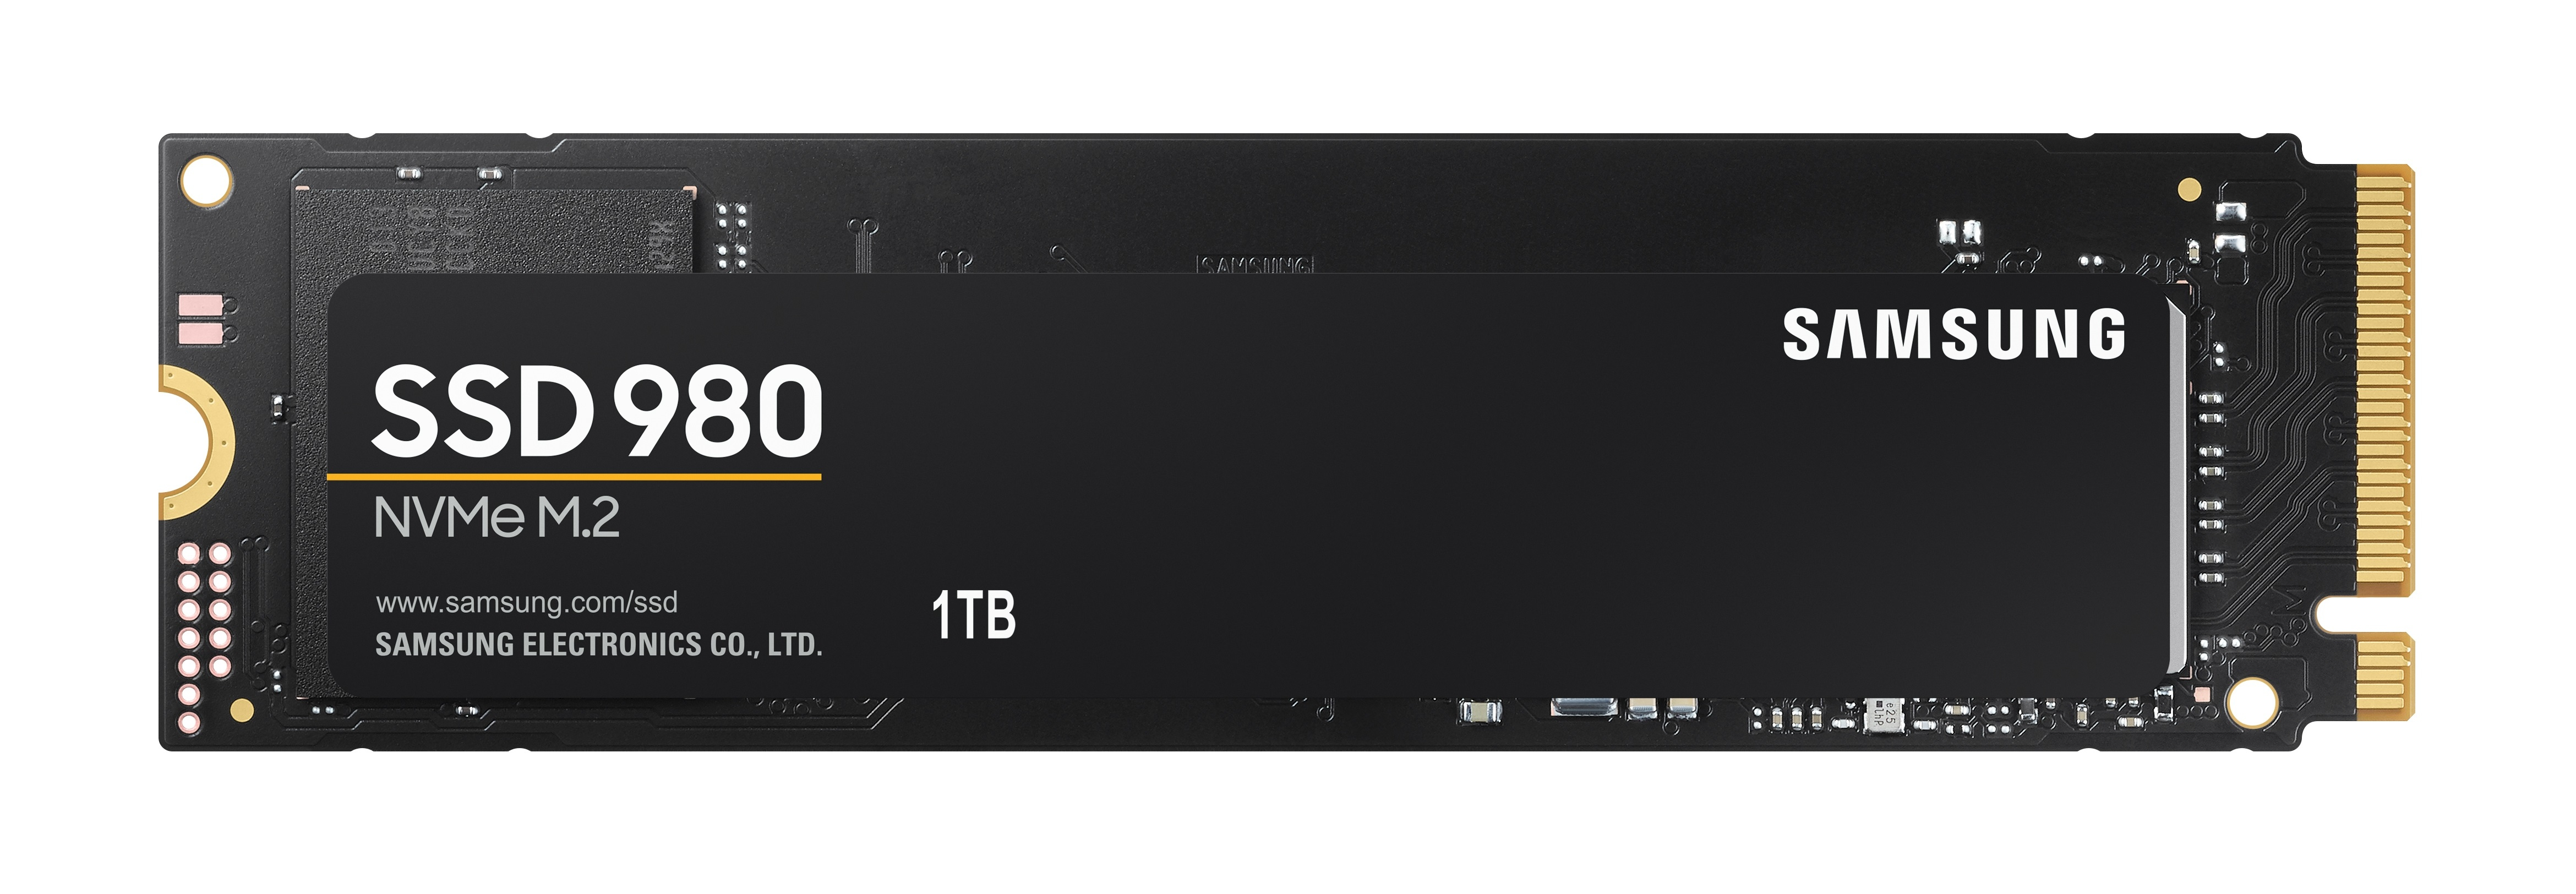 Mz v8v250bw. SSD M.2 накопитель Samsung 970 EVO Plus. Samsung 970 Pro NVME. 1000 ГБ SSD M.2 накопитель Samsung 980. Твердотельный накопитель SSD M.2 2280.